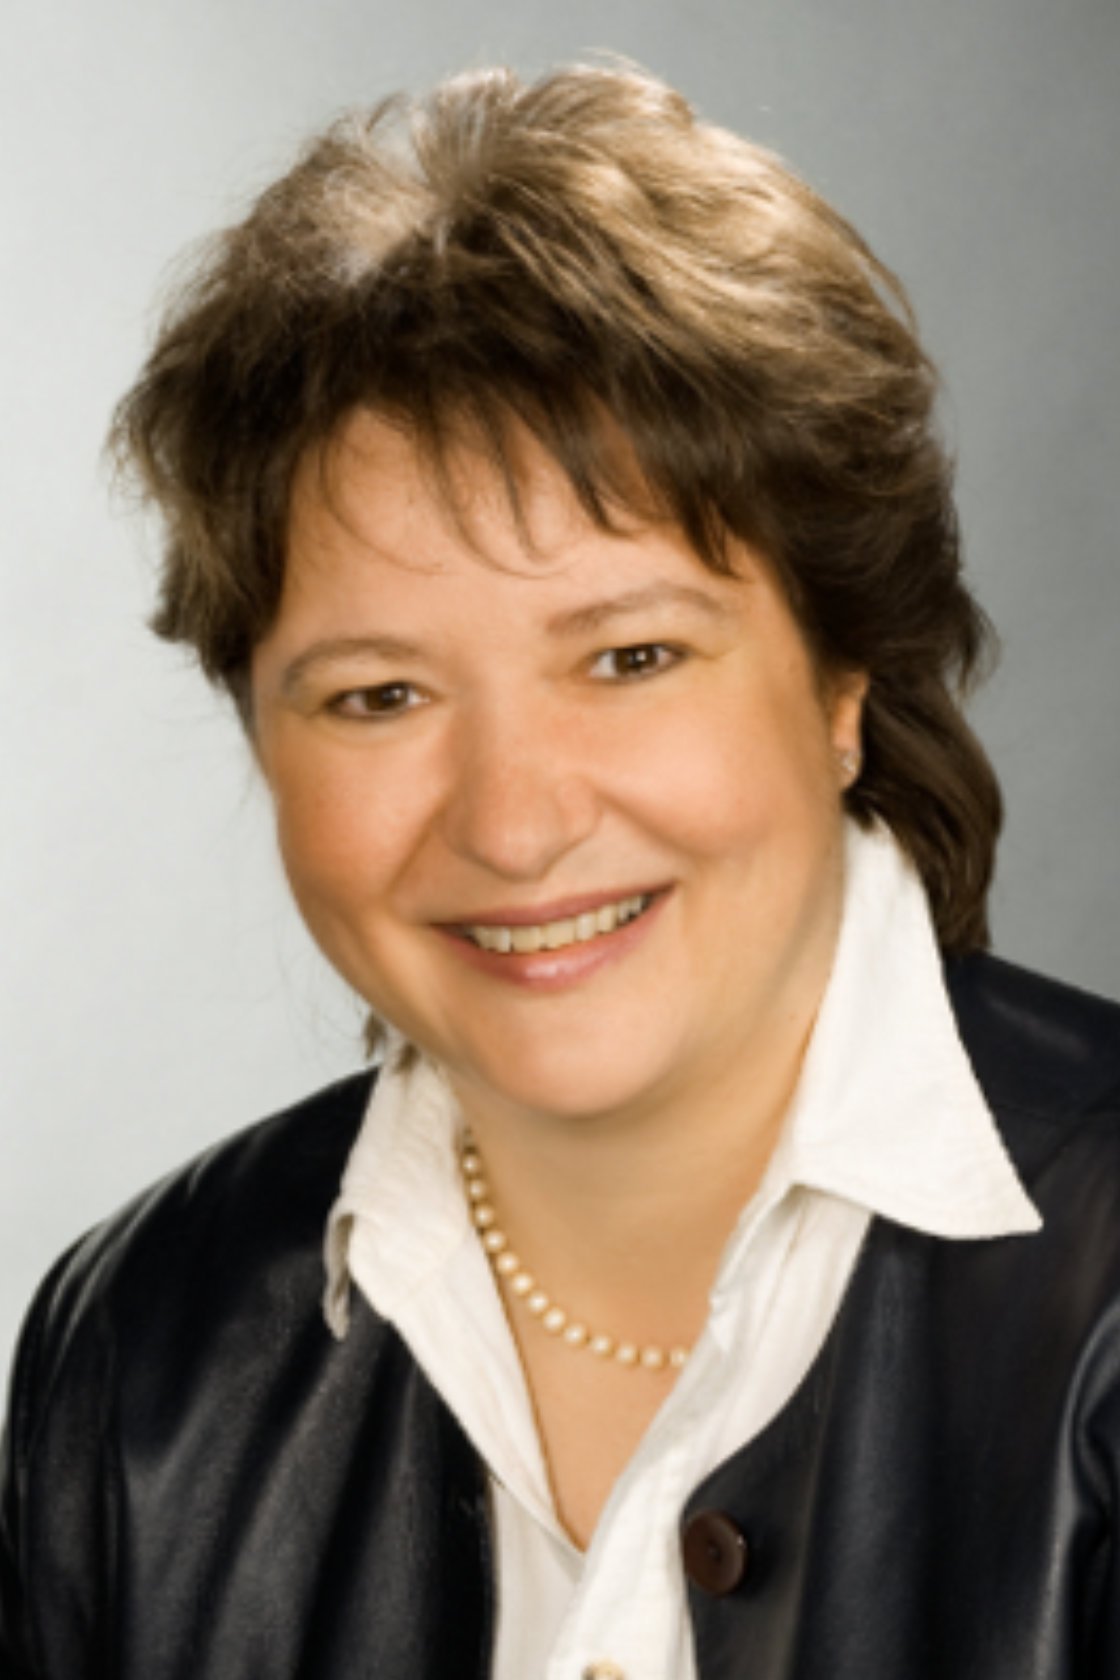 Angela Rehorst